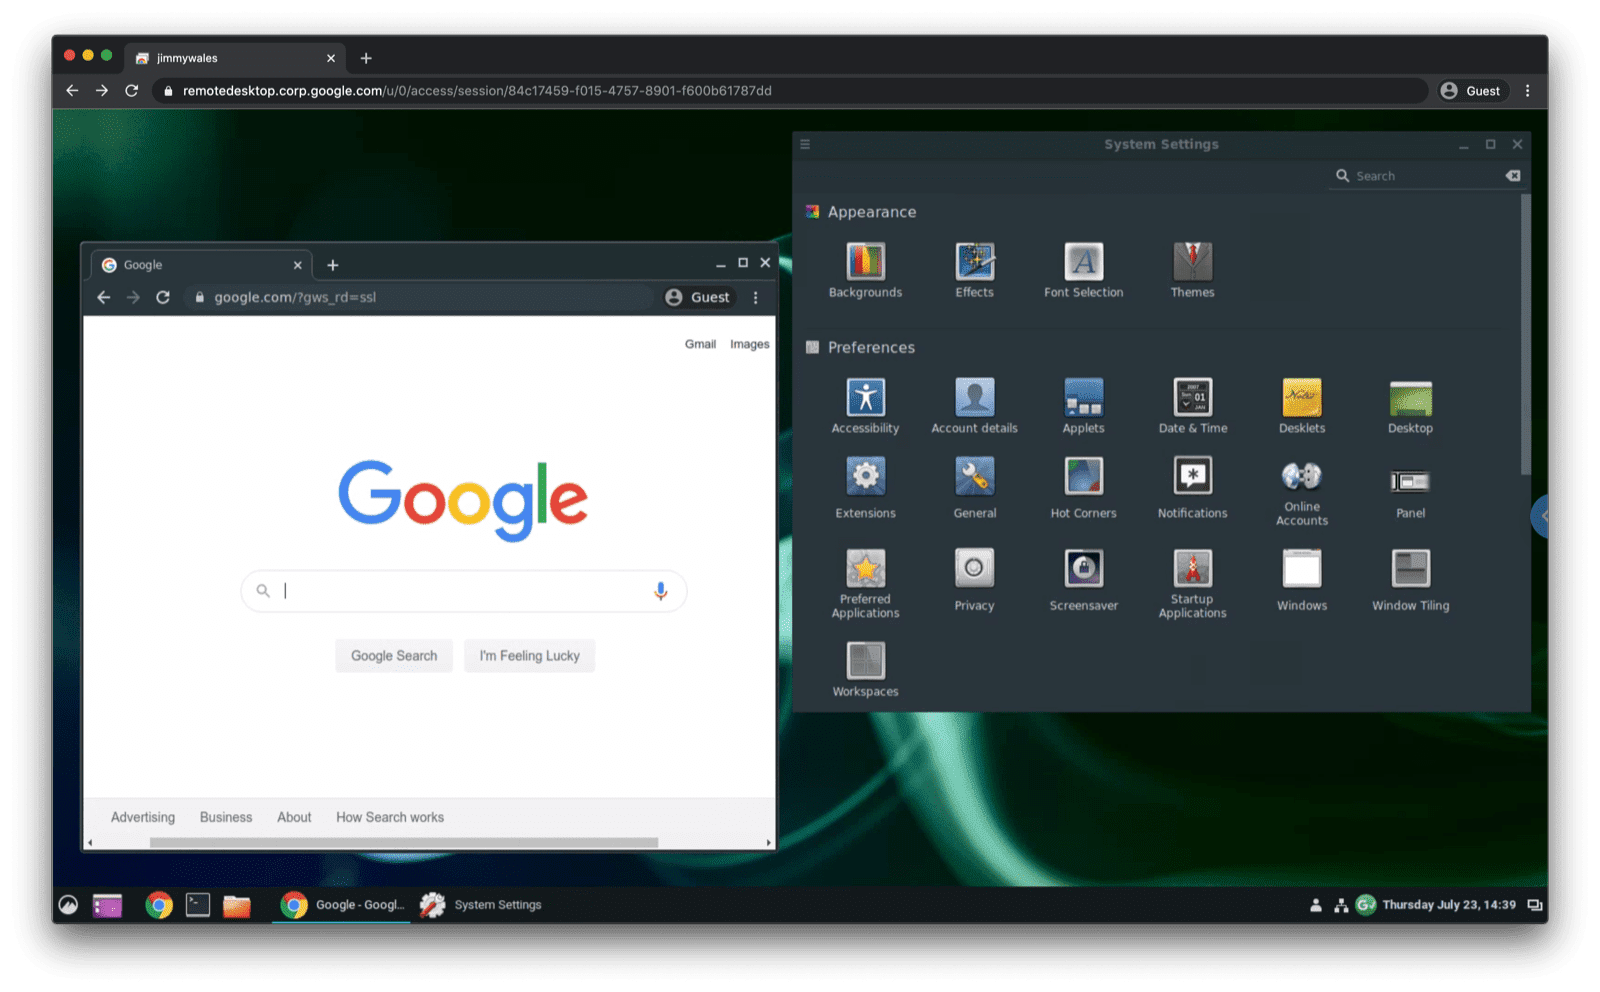 لینوکس اوبونتو به تب مرورگر در macOS Chrome پخش شد (هنوز در حالت تمام صفحه اجرا نمی شود).